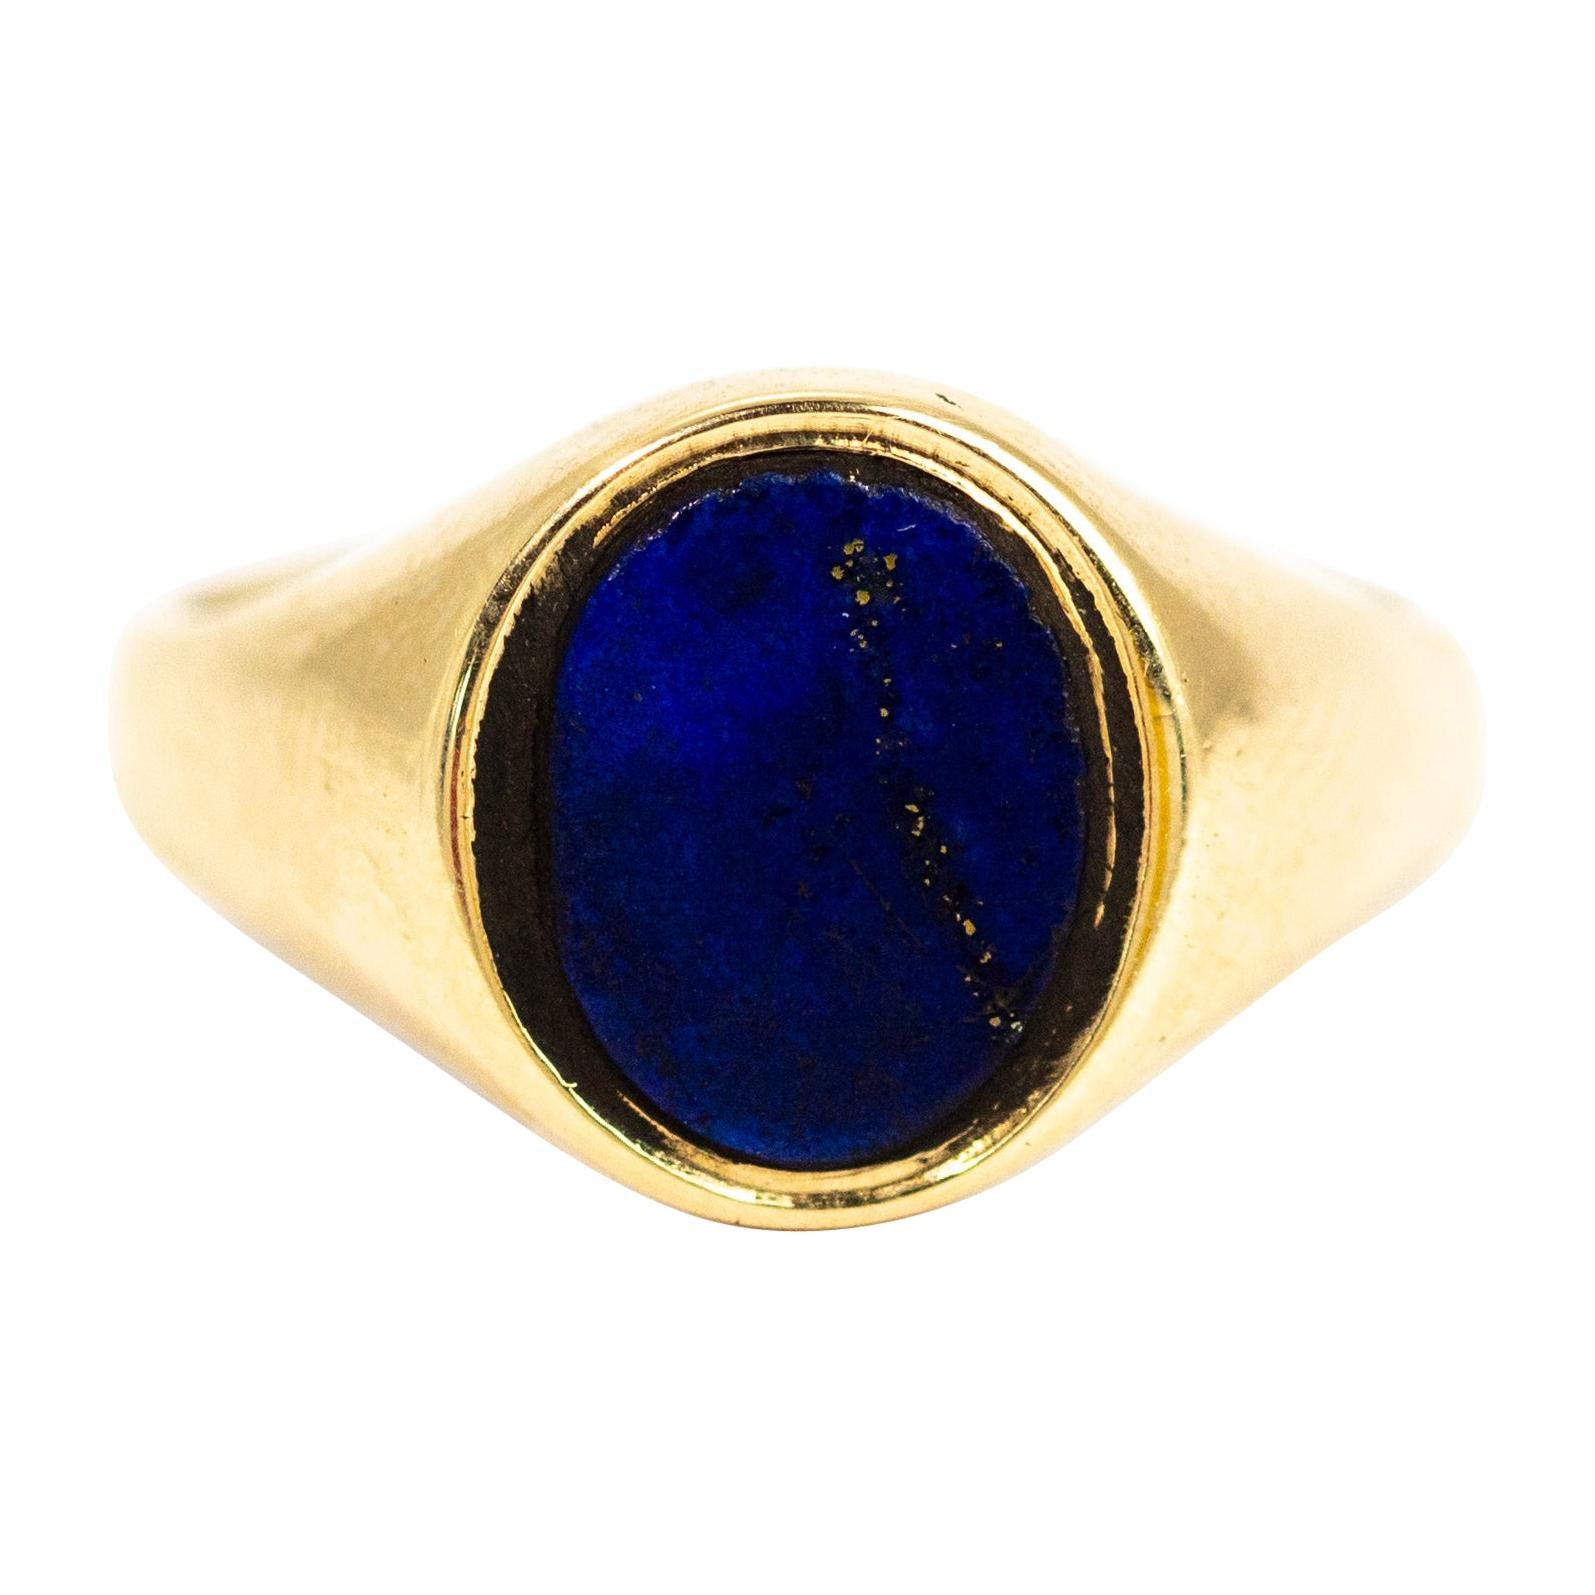 Vintage 9 Carat Gold Lapis Lazuli Signet Ring